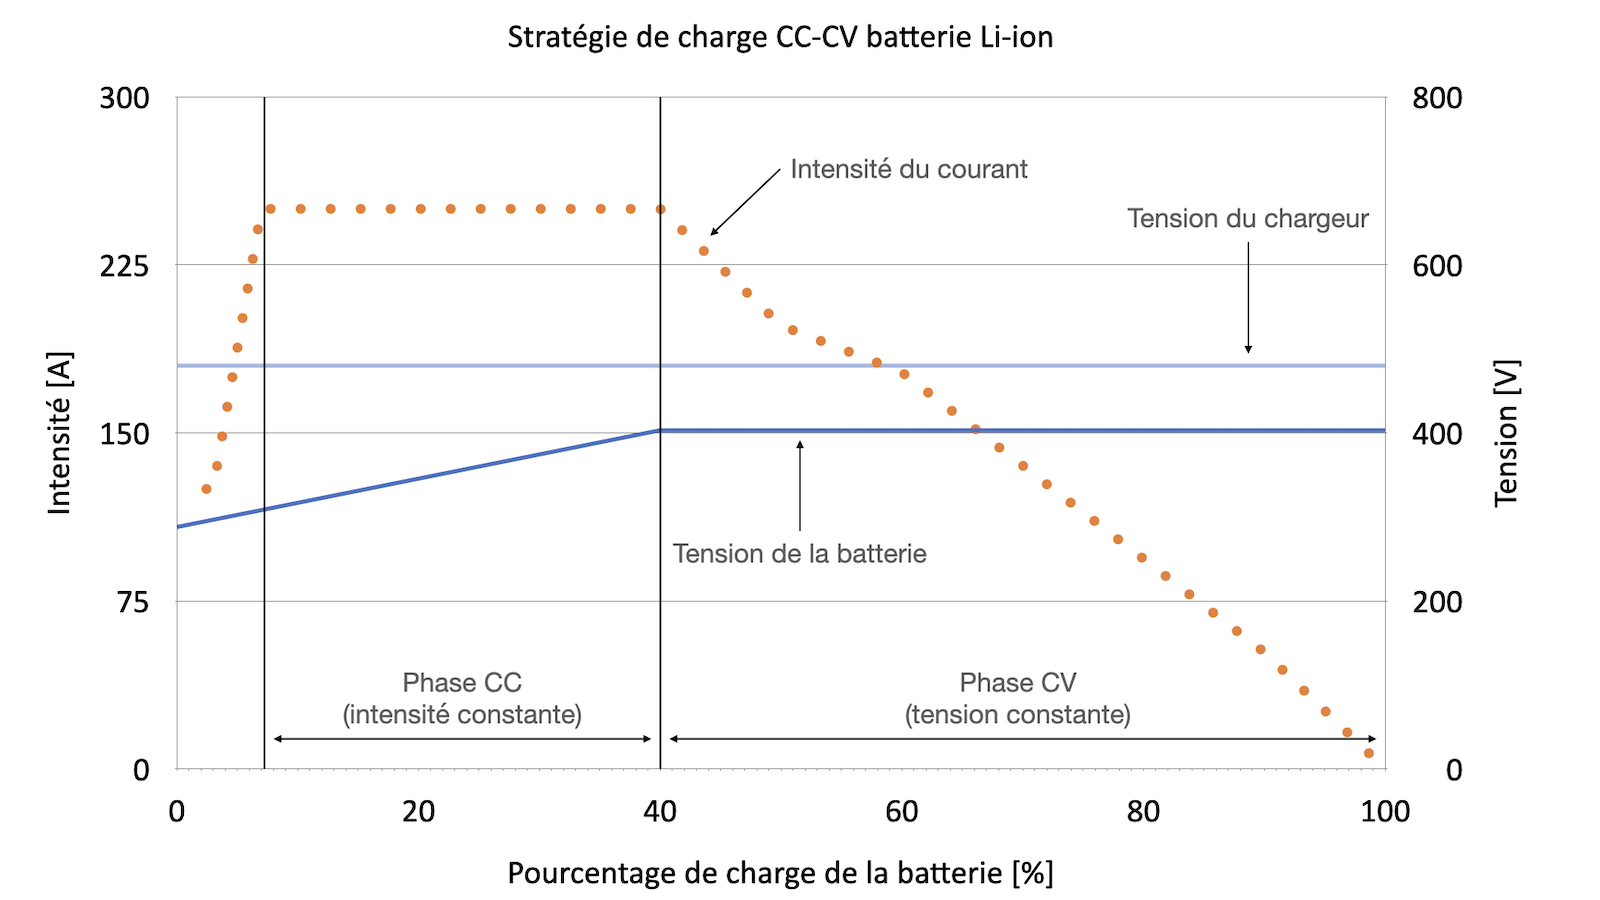 Illustration stratégie de charge CC-CV batterie Li-ion véhicules électriques